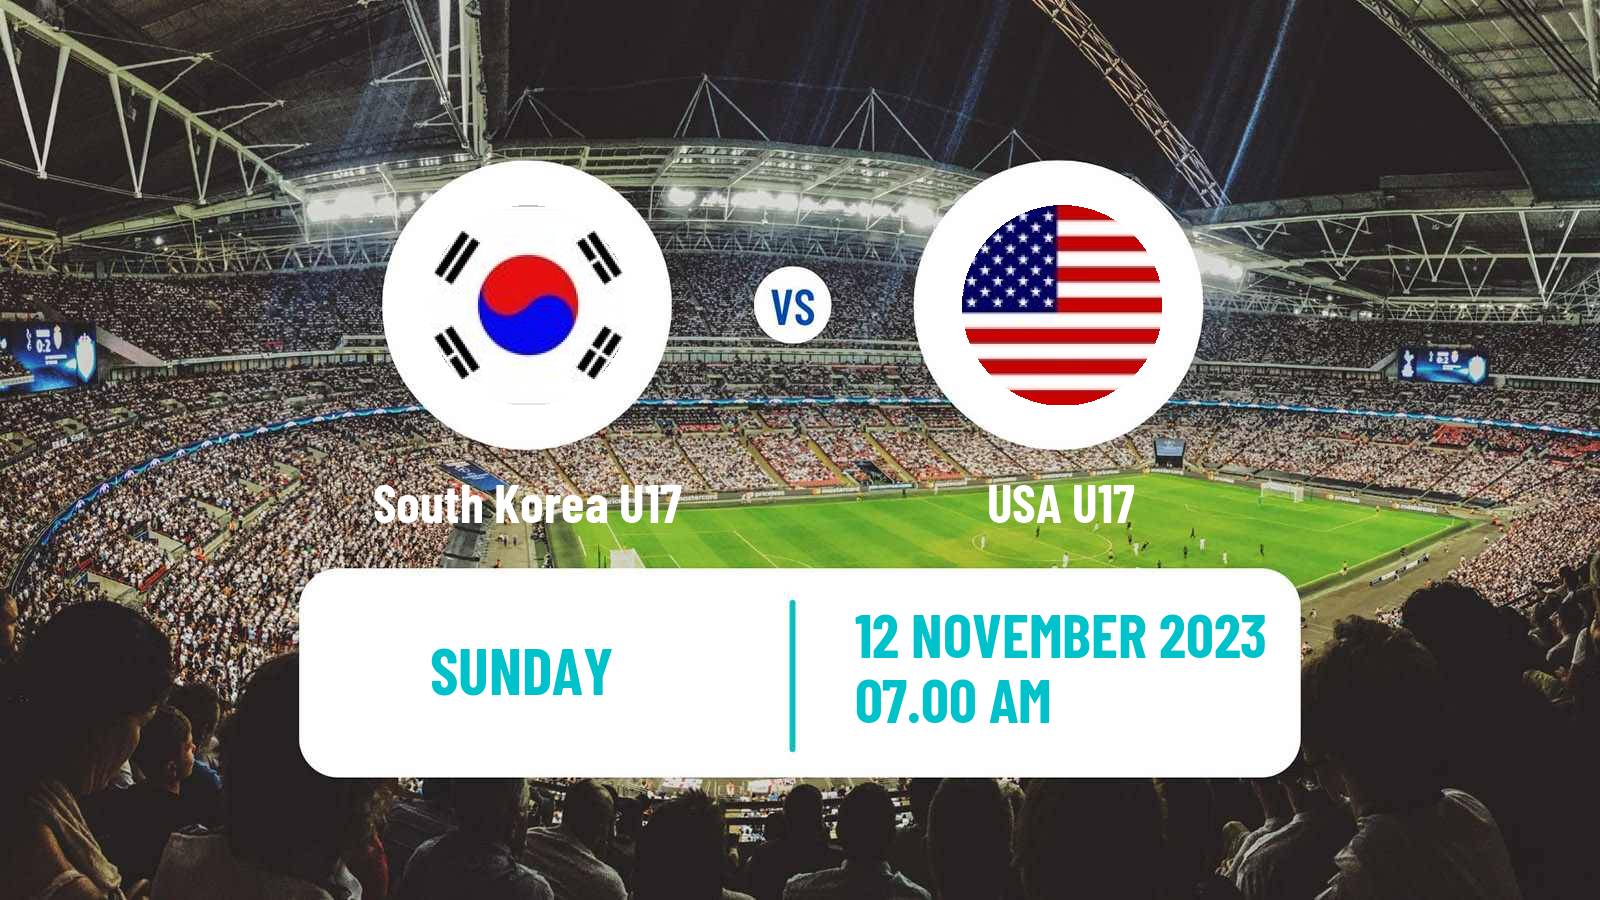 Soccer FIFA World Cup U17 South Korea U17 - USA U17